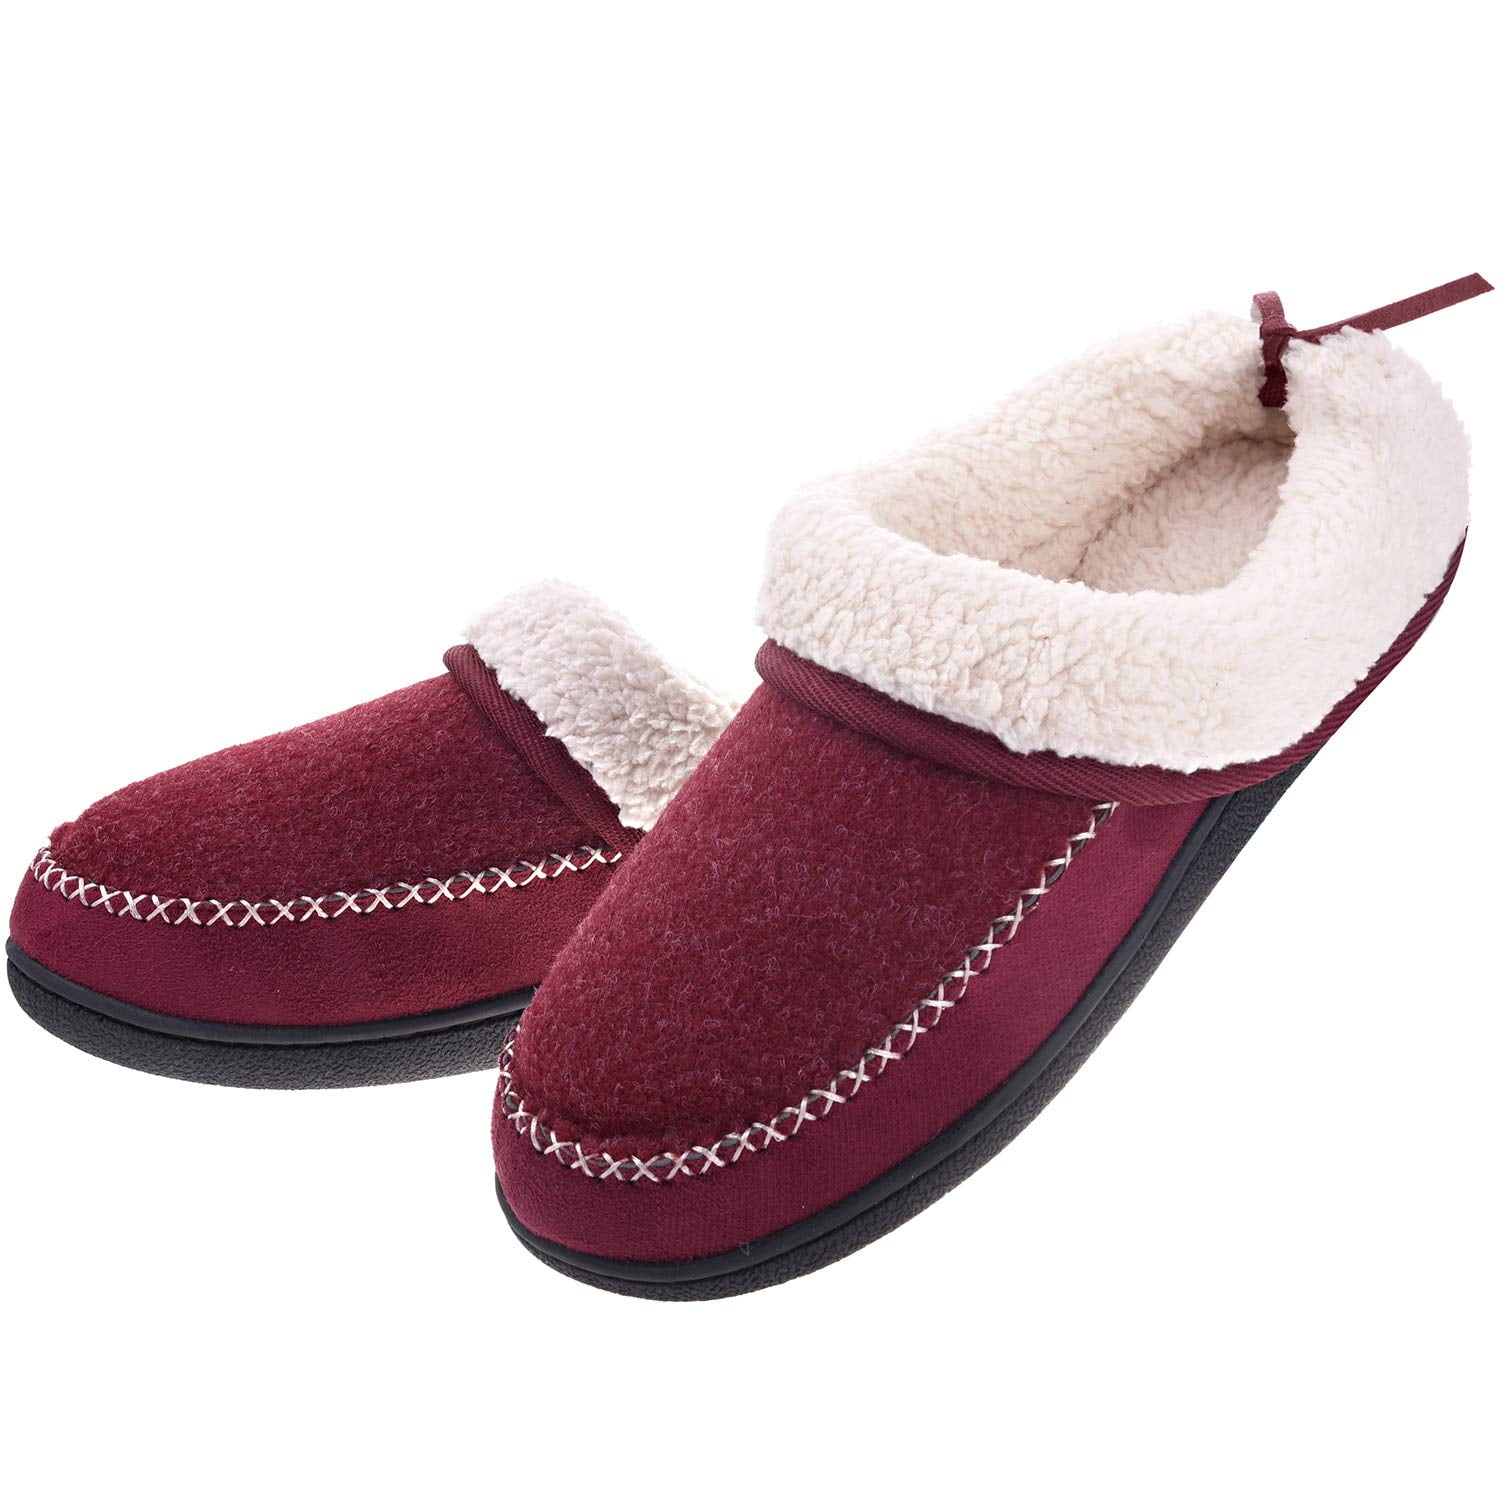 wool slippers ladies